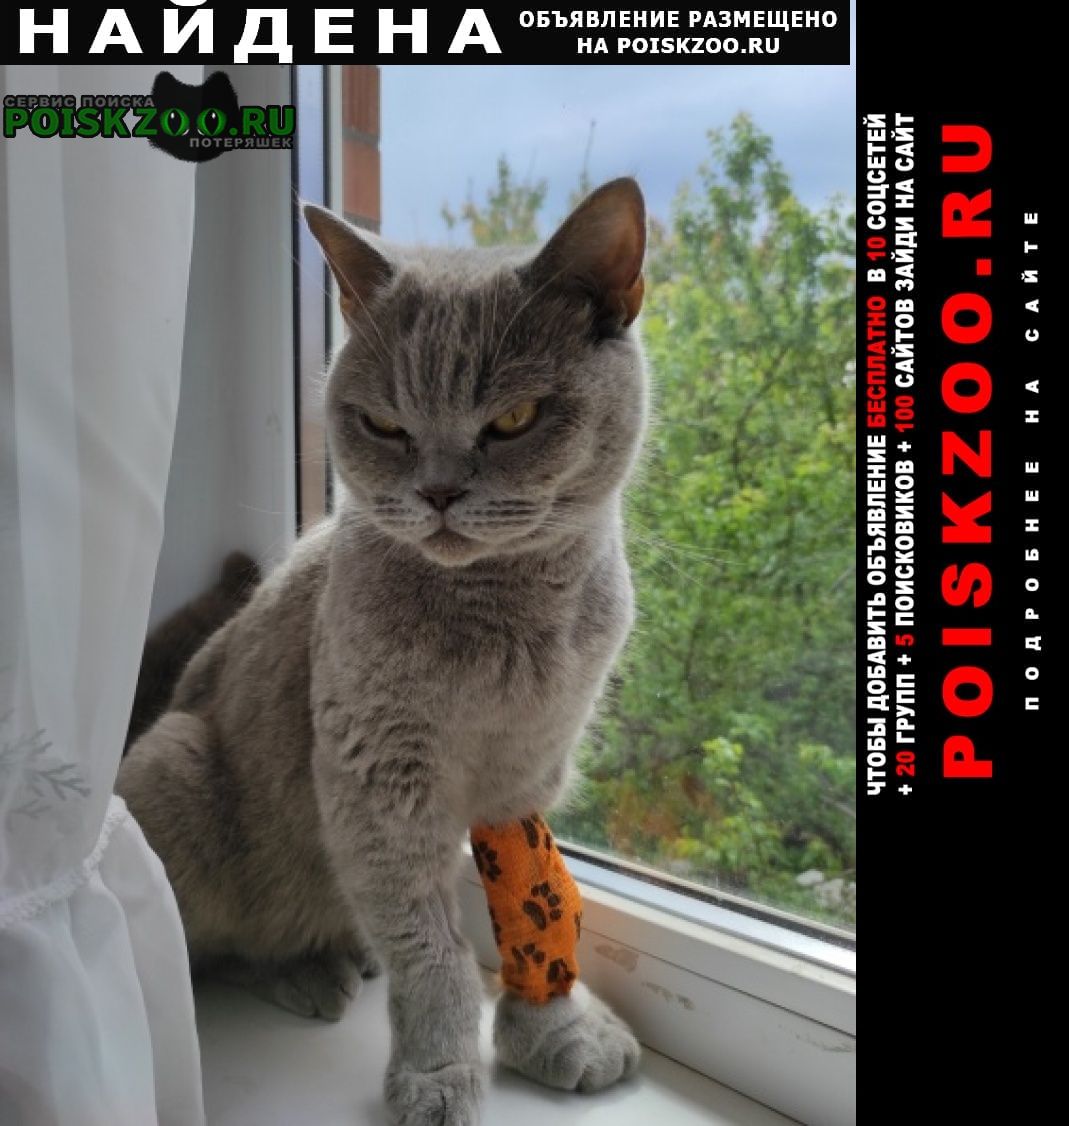 Найдена кошка британской породы Ростов-на-Дону